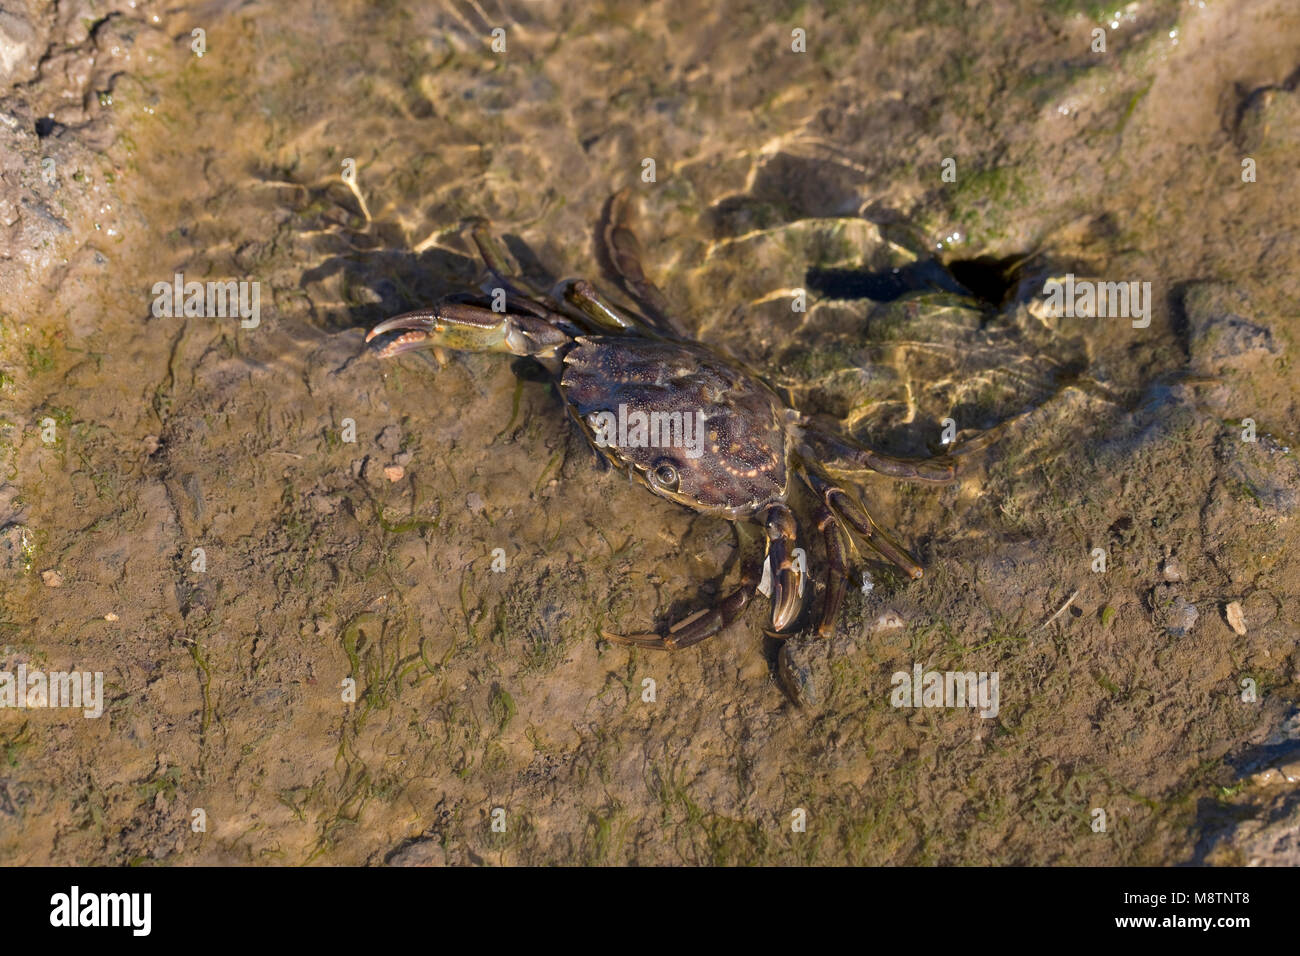 Common Shore Crab (Carcinus maenas) Stock Photo